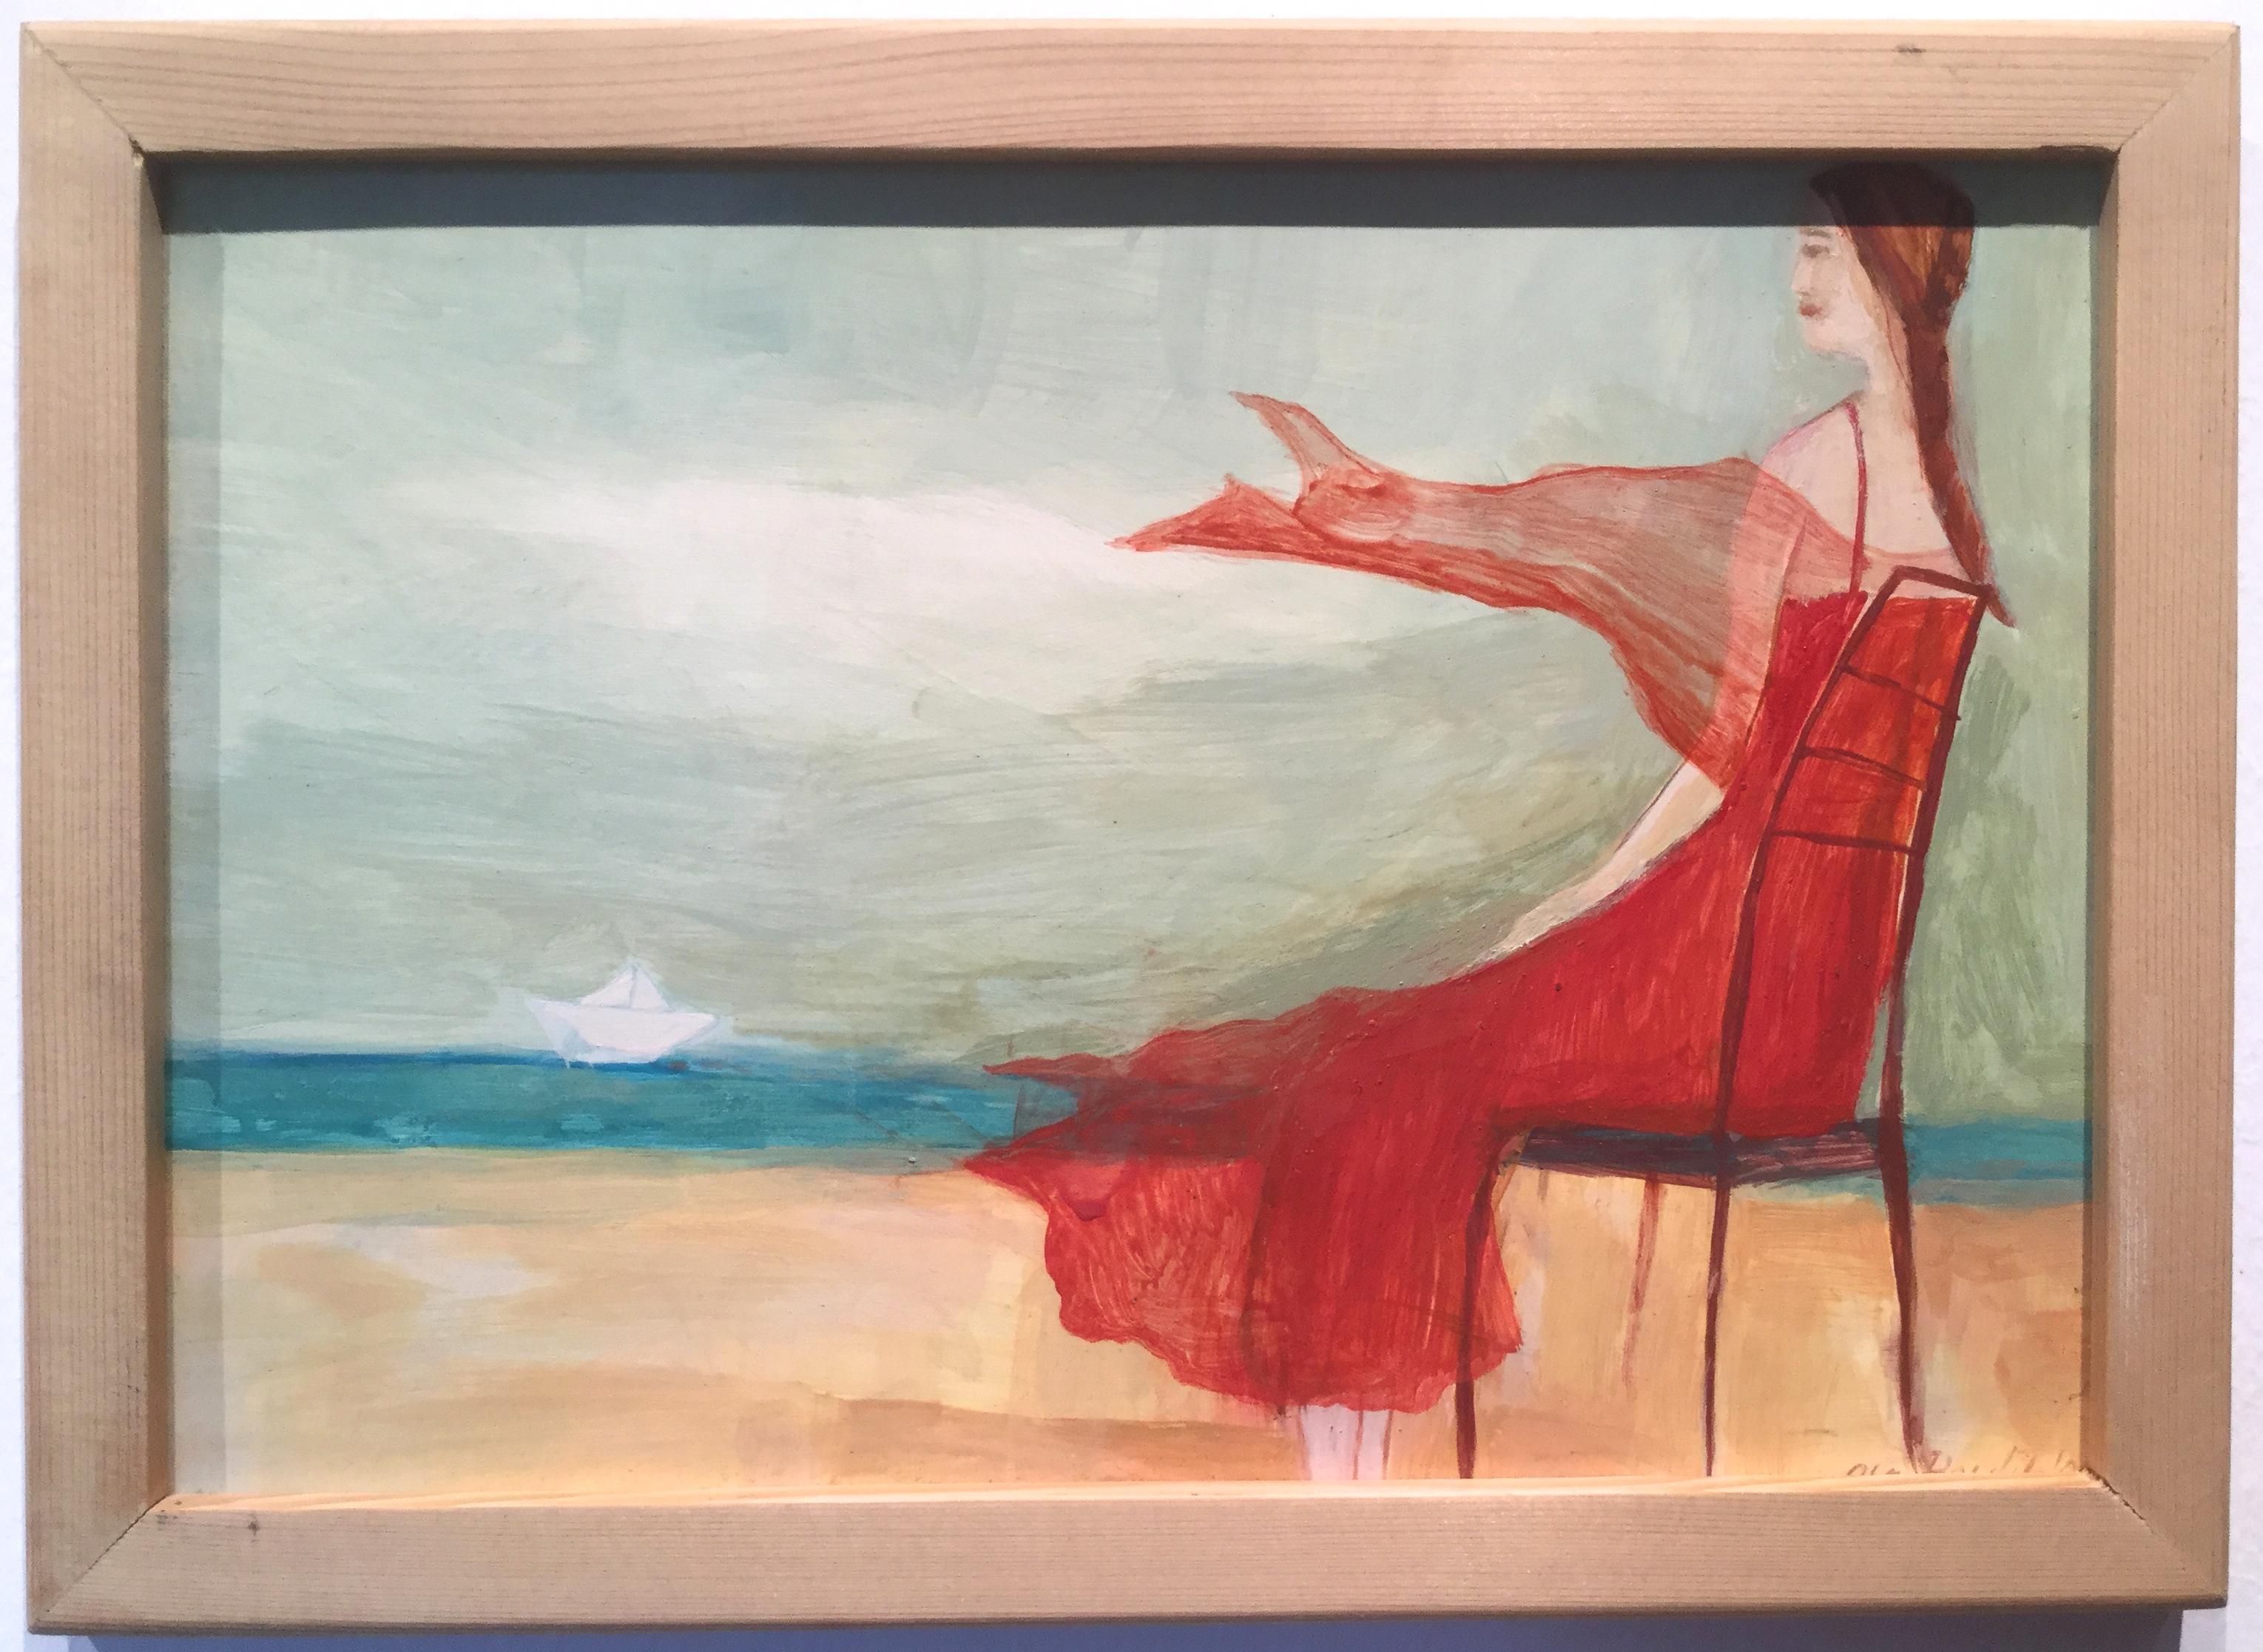 Une fille en robe rouge regarde la mer - Gracieuse peinture romantique illustrative